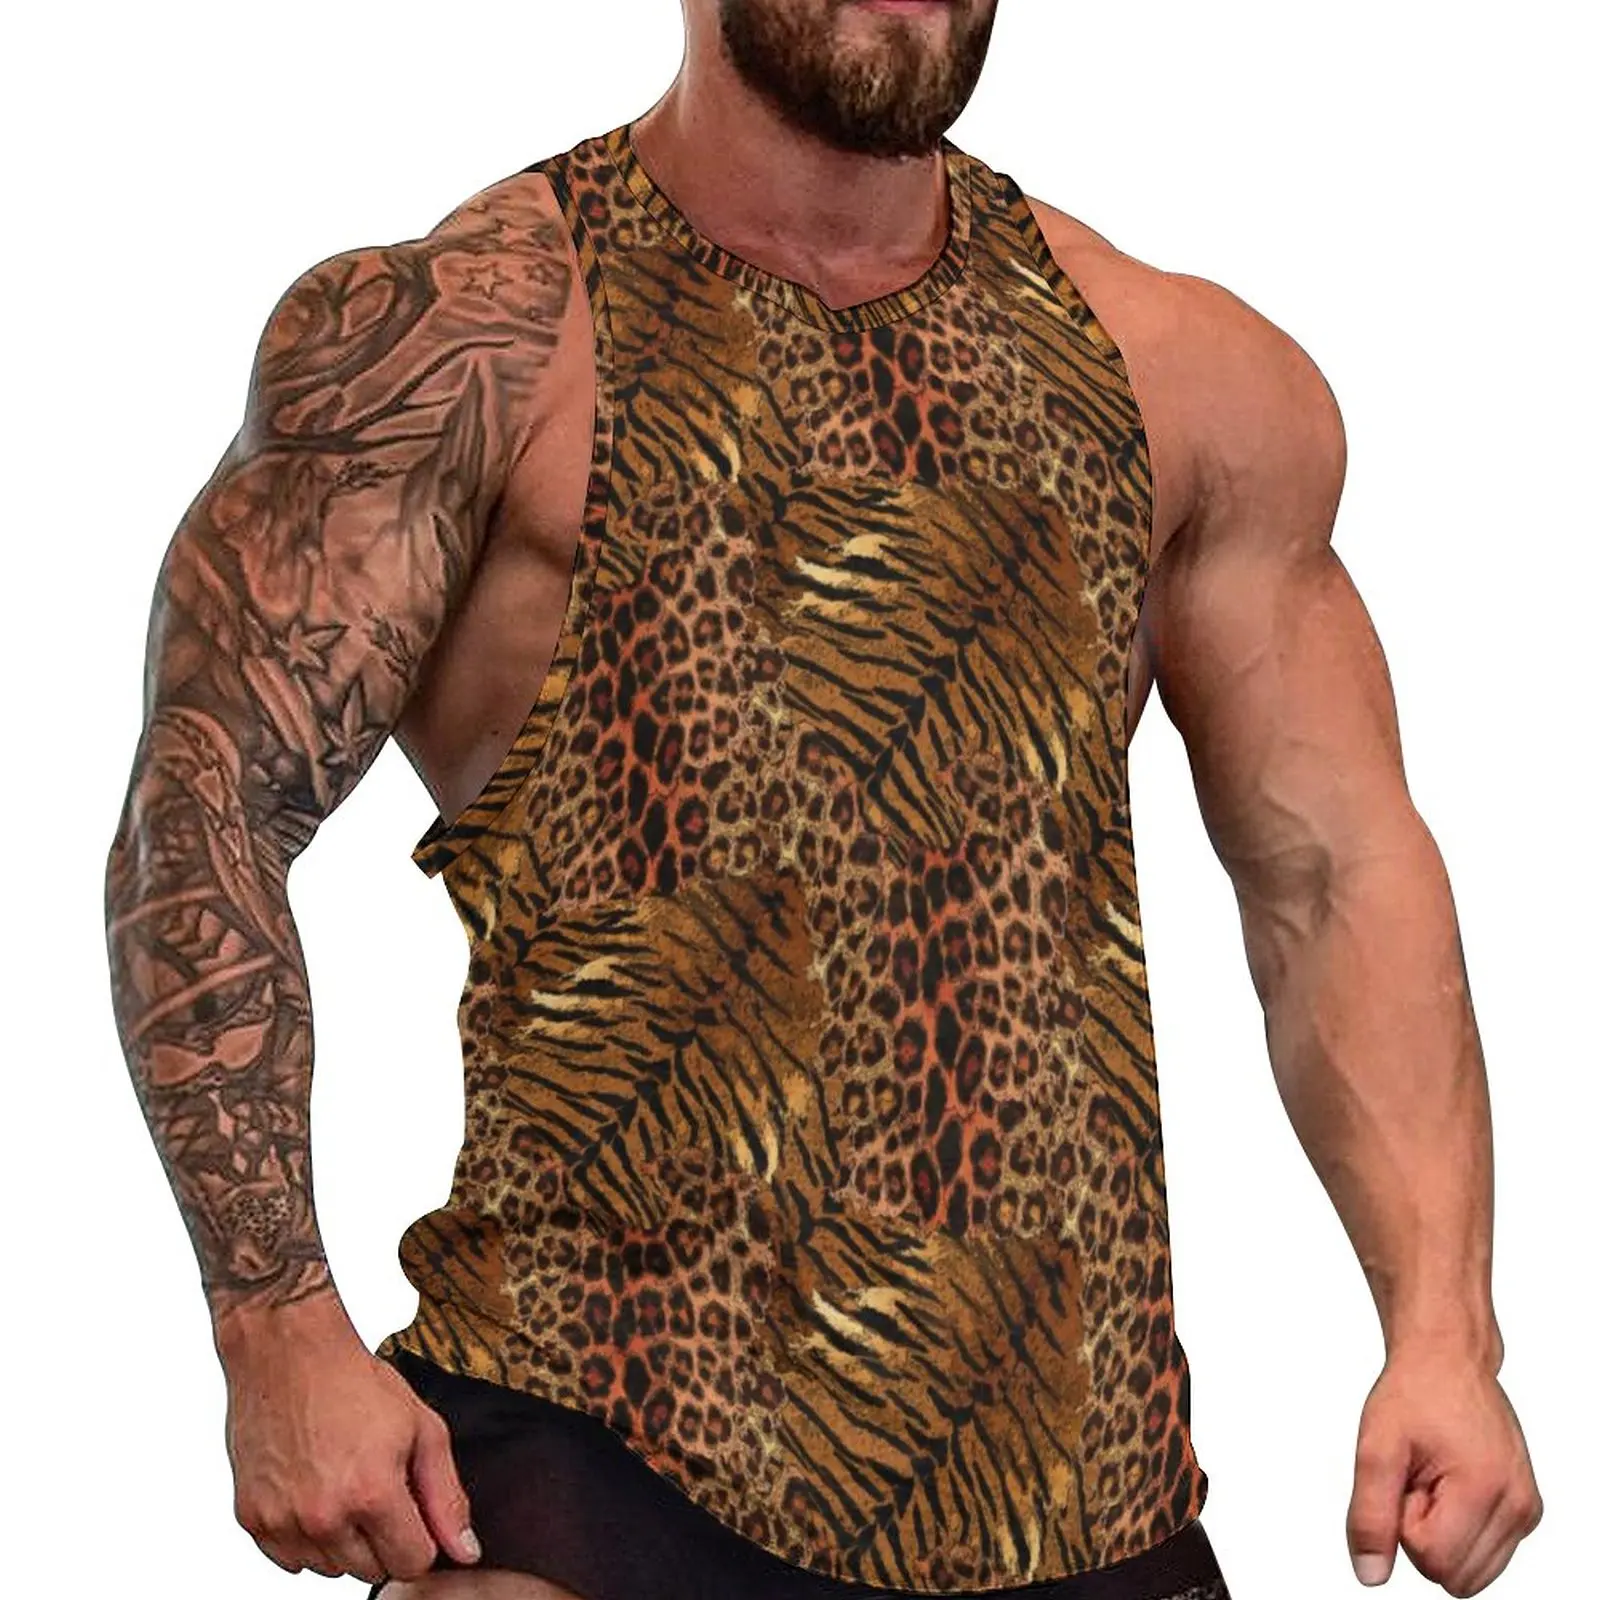 

Майка мужская с леопардовым принтом, трендовая тренировочная рубашка в полоску, топ оверсайз с винтажным графическим принтом, без рукавов, на лето